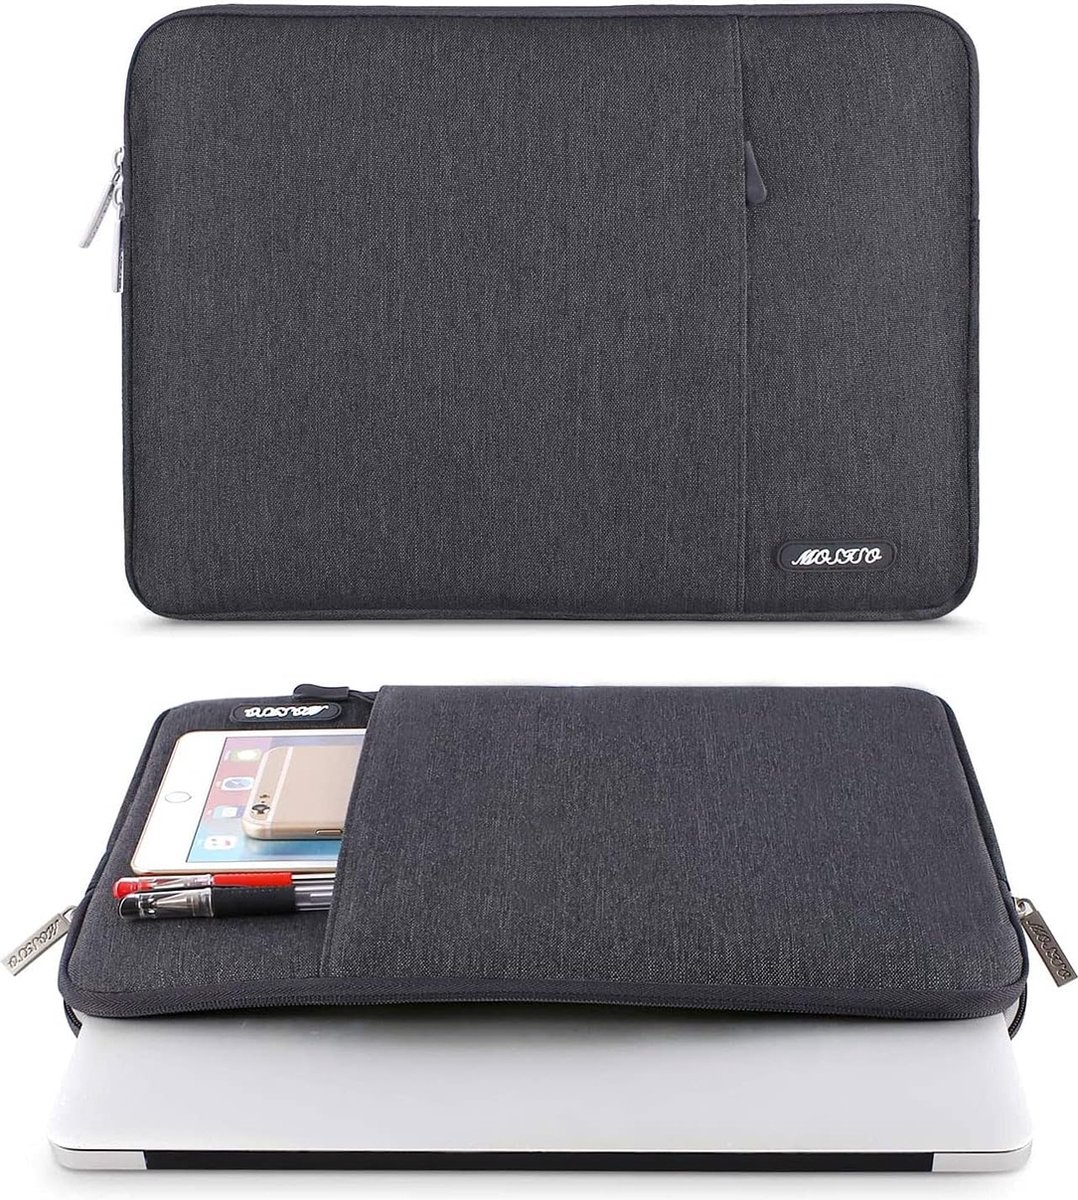 Laptop Hoes Tas Compatibel met 13.3inch, Polyester Verticaal Case Cover met Zak, space grijs